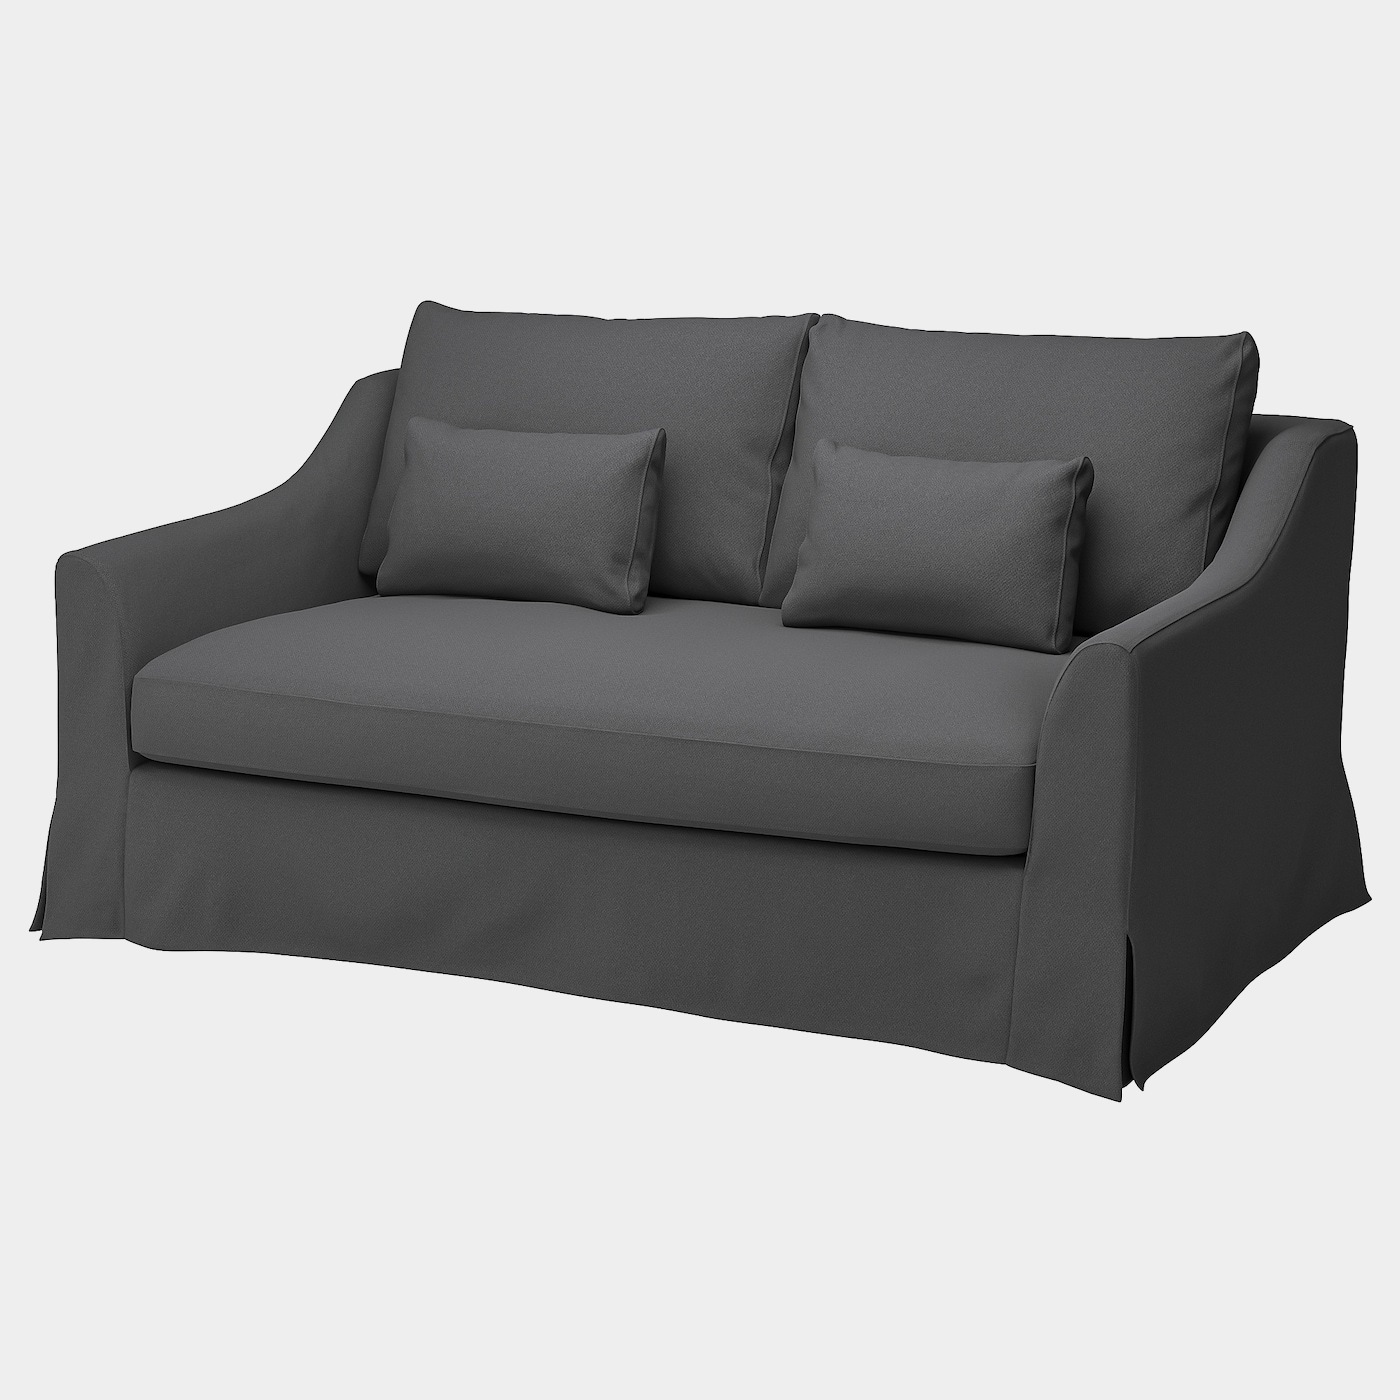 FÄRLÖV 2er-Sofa  -  - Möbel Ideen für dein Zuhause von Home Trends. Möbel Trends von Social Media Influencer für dein Skandi Zuhause.